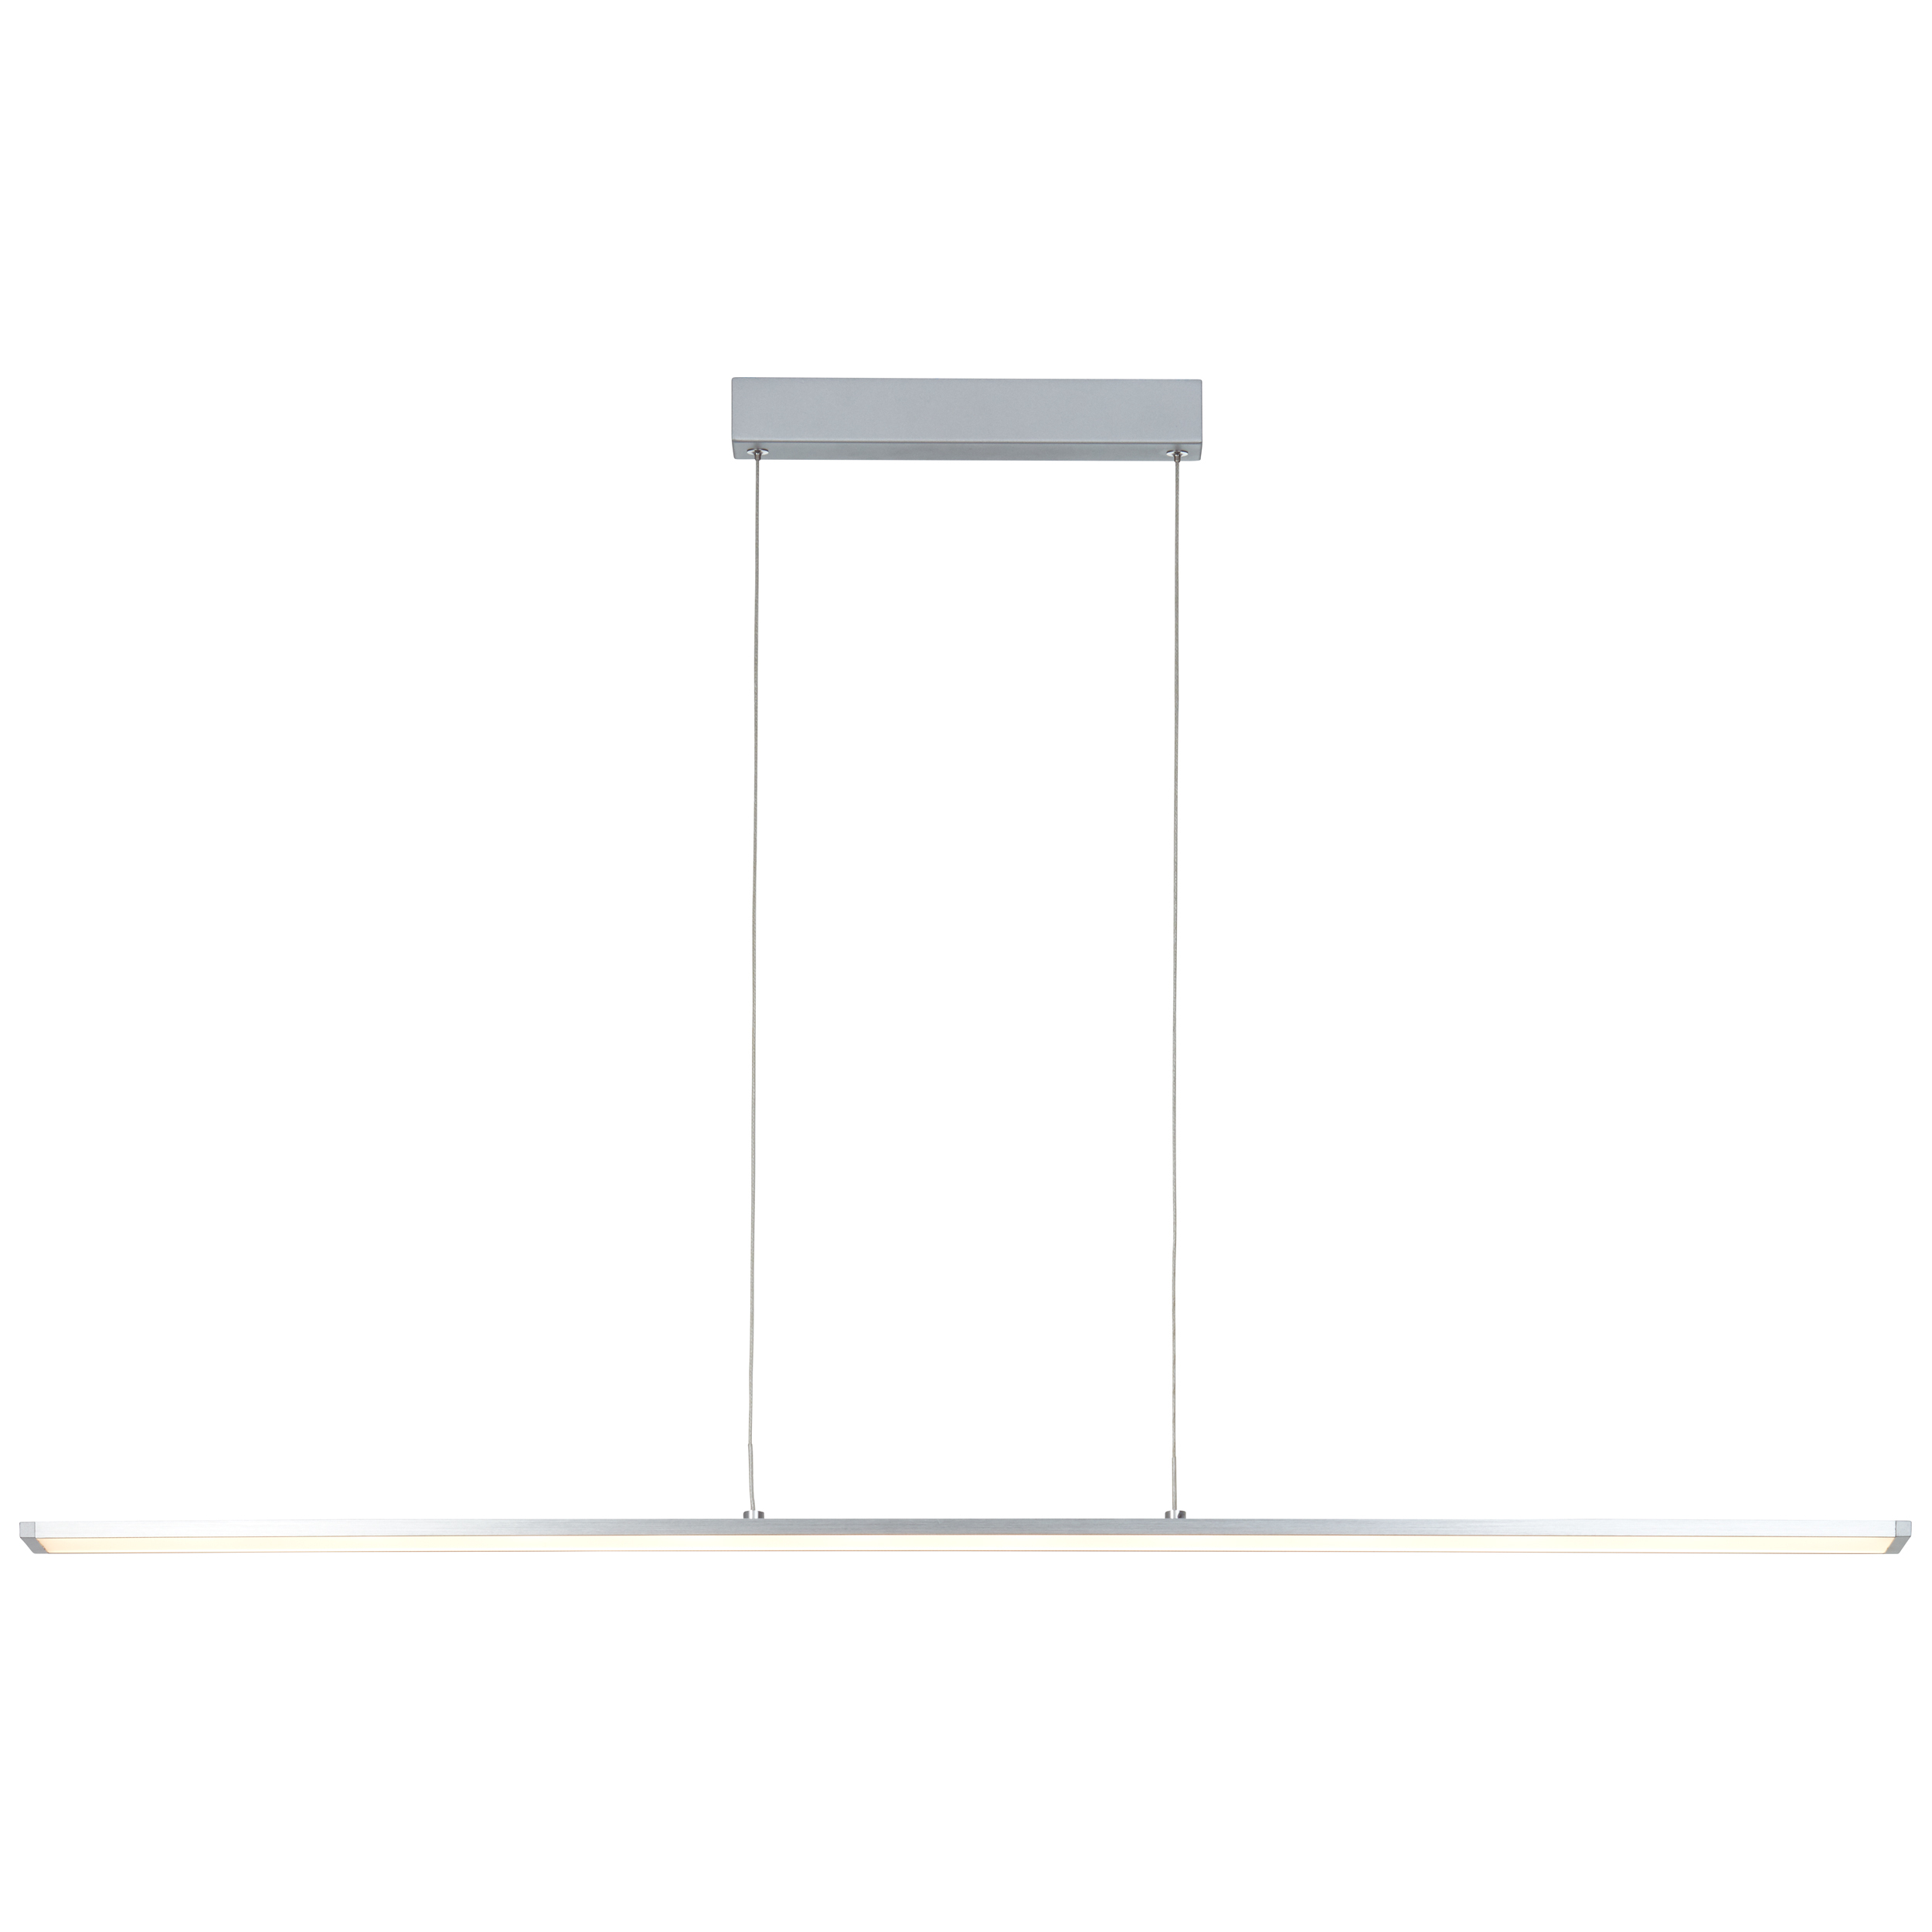 Entrance LED Pendelleuchte Paneel 120cm easyDim G97028/21 | alu/weiß